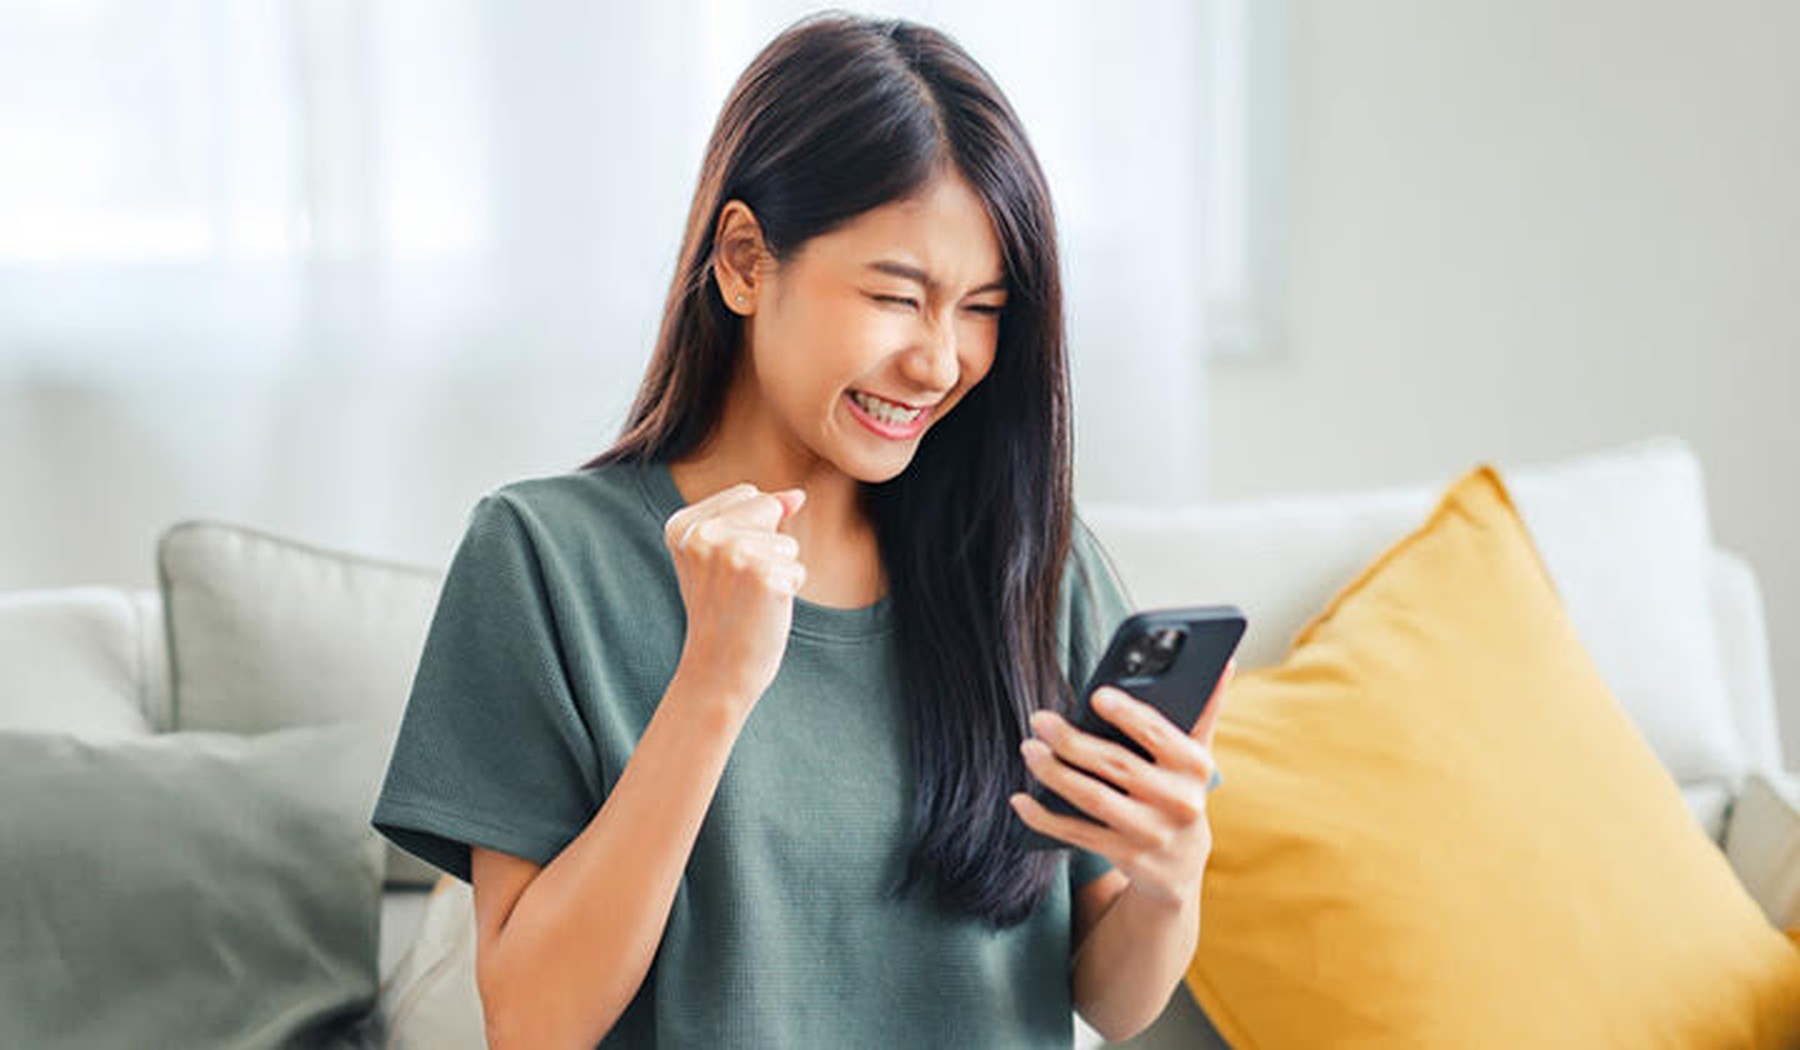 Mujer contenta tras conseguir ahorrar dinero en su compra online a través del móvil